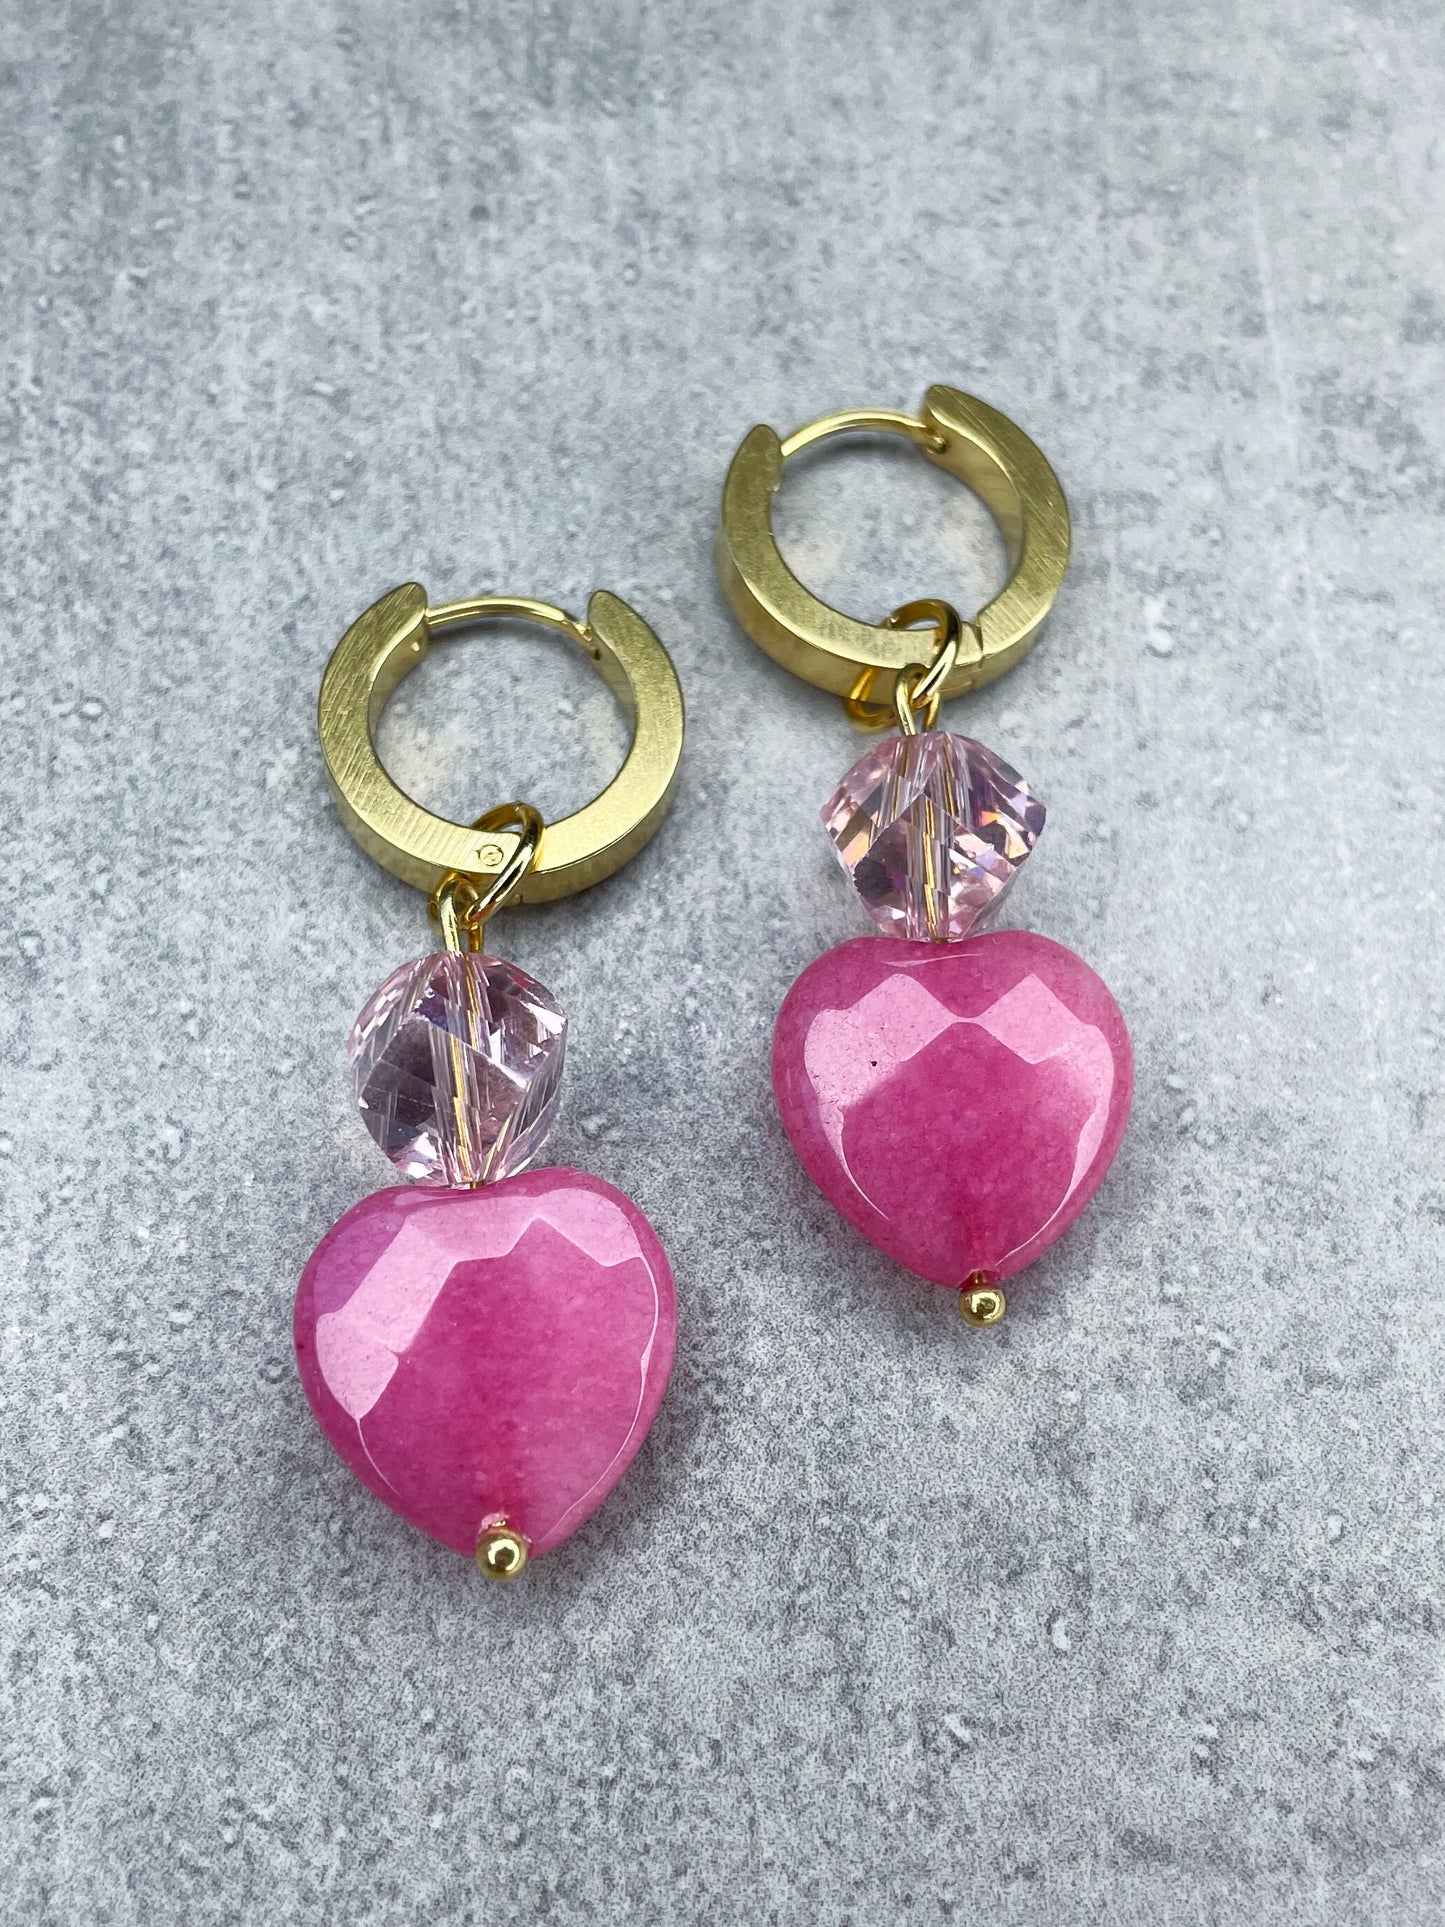 Earrings "Berry Hearts" - 1 pair